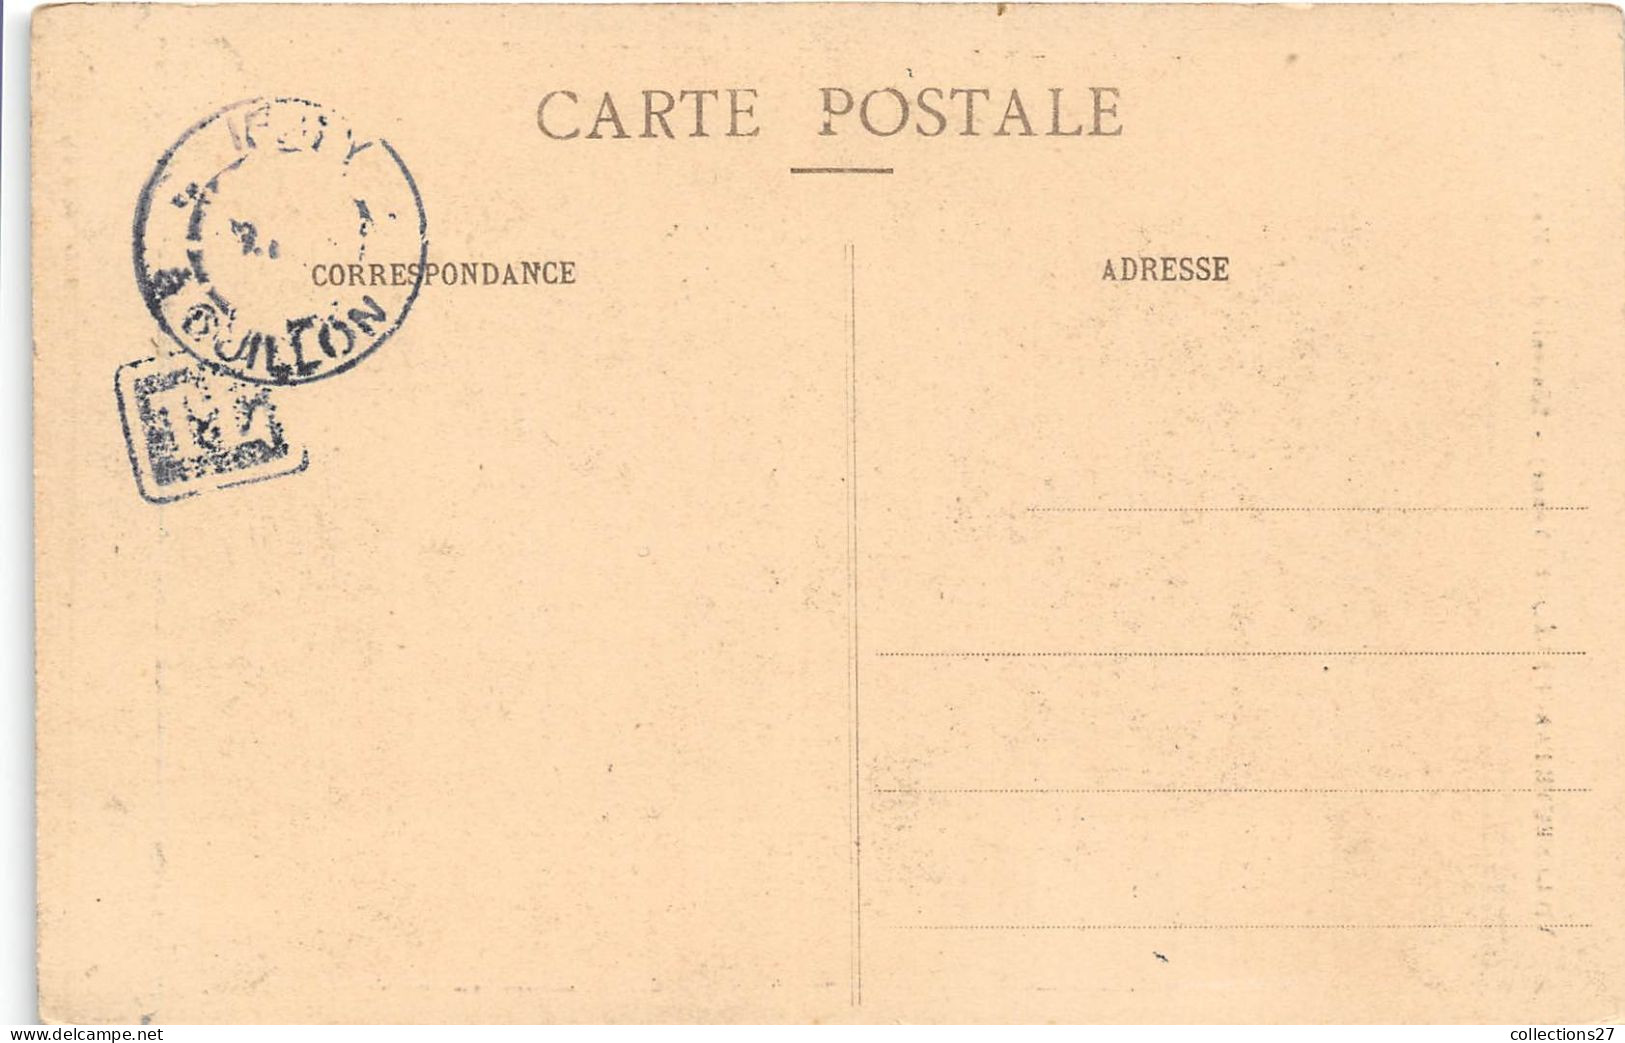 89-VILLENEUVE-L'ARCHEVÊQUE- SOUVENIR DU 2 MARS 1913 - Villeneuve-l'Archevêque